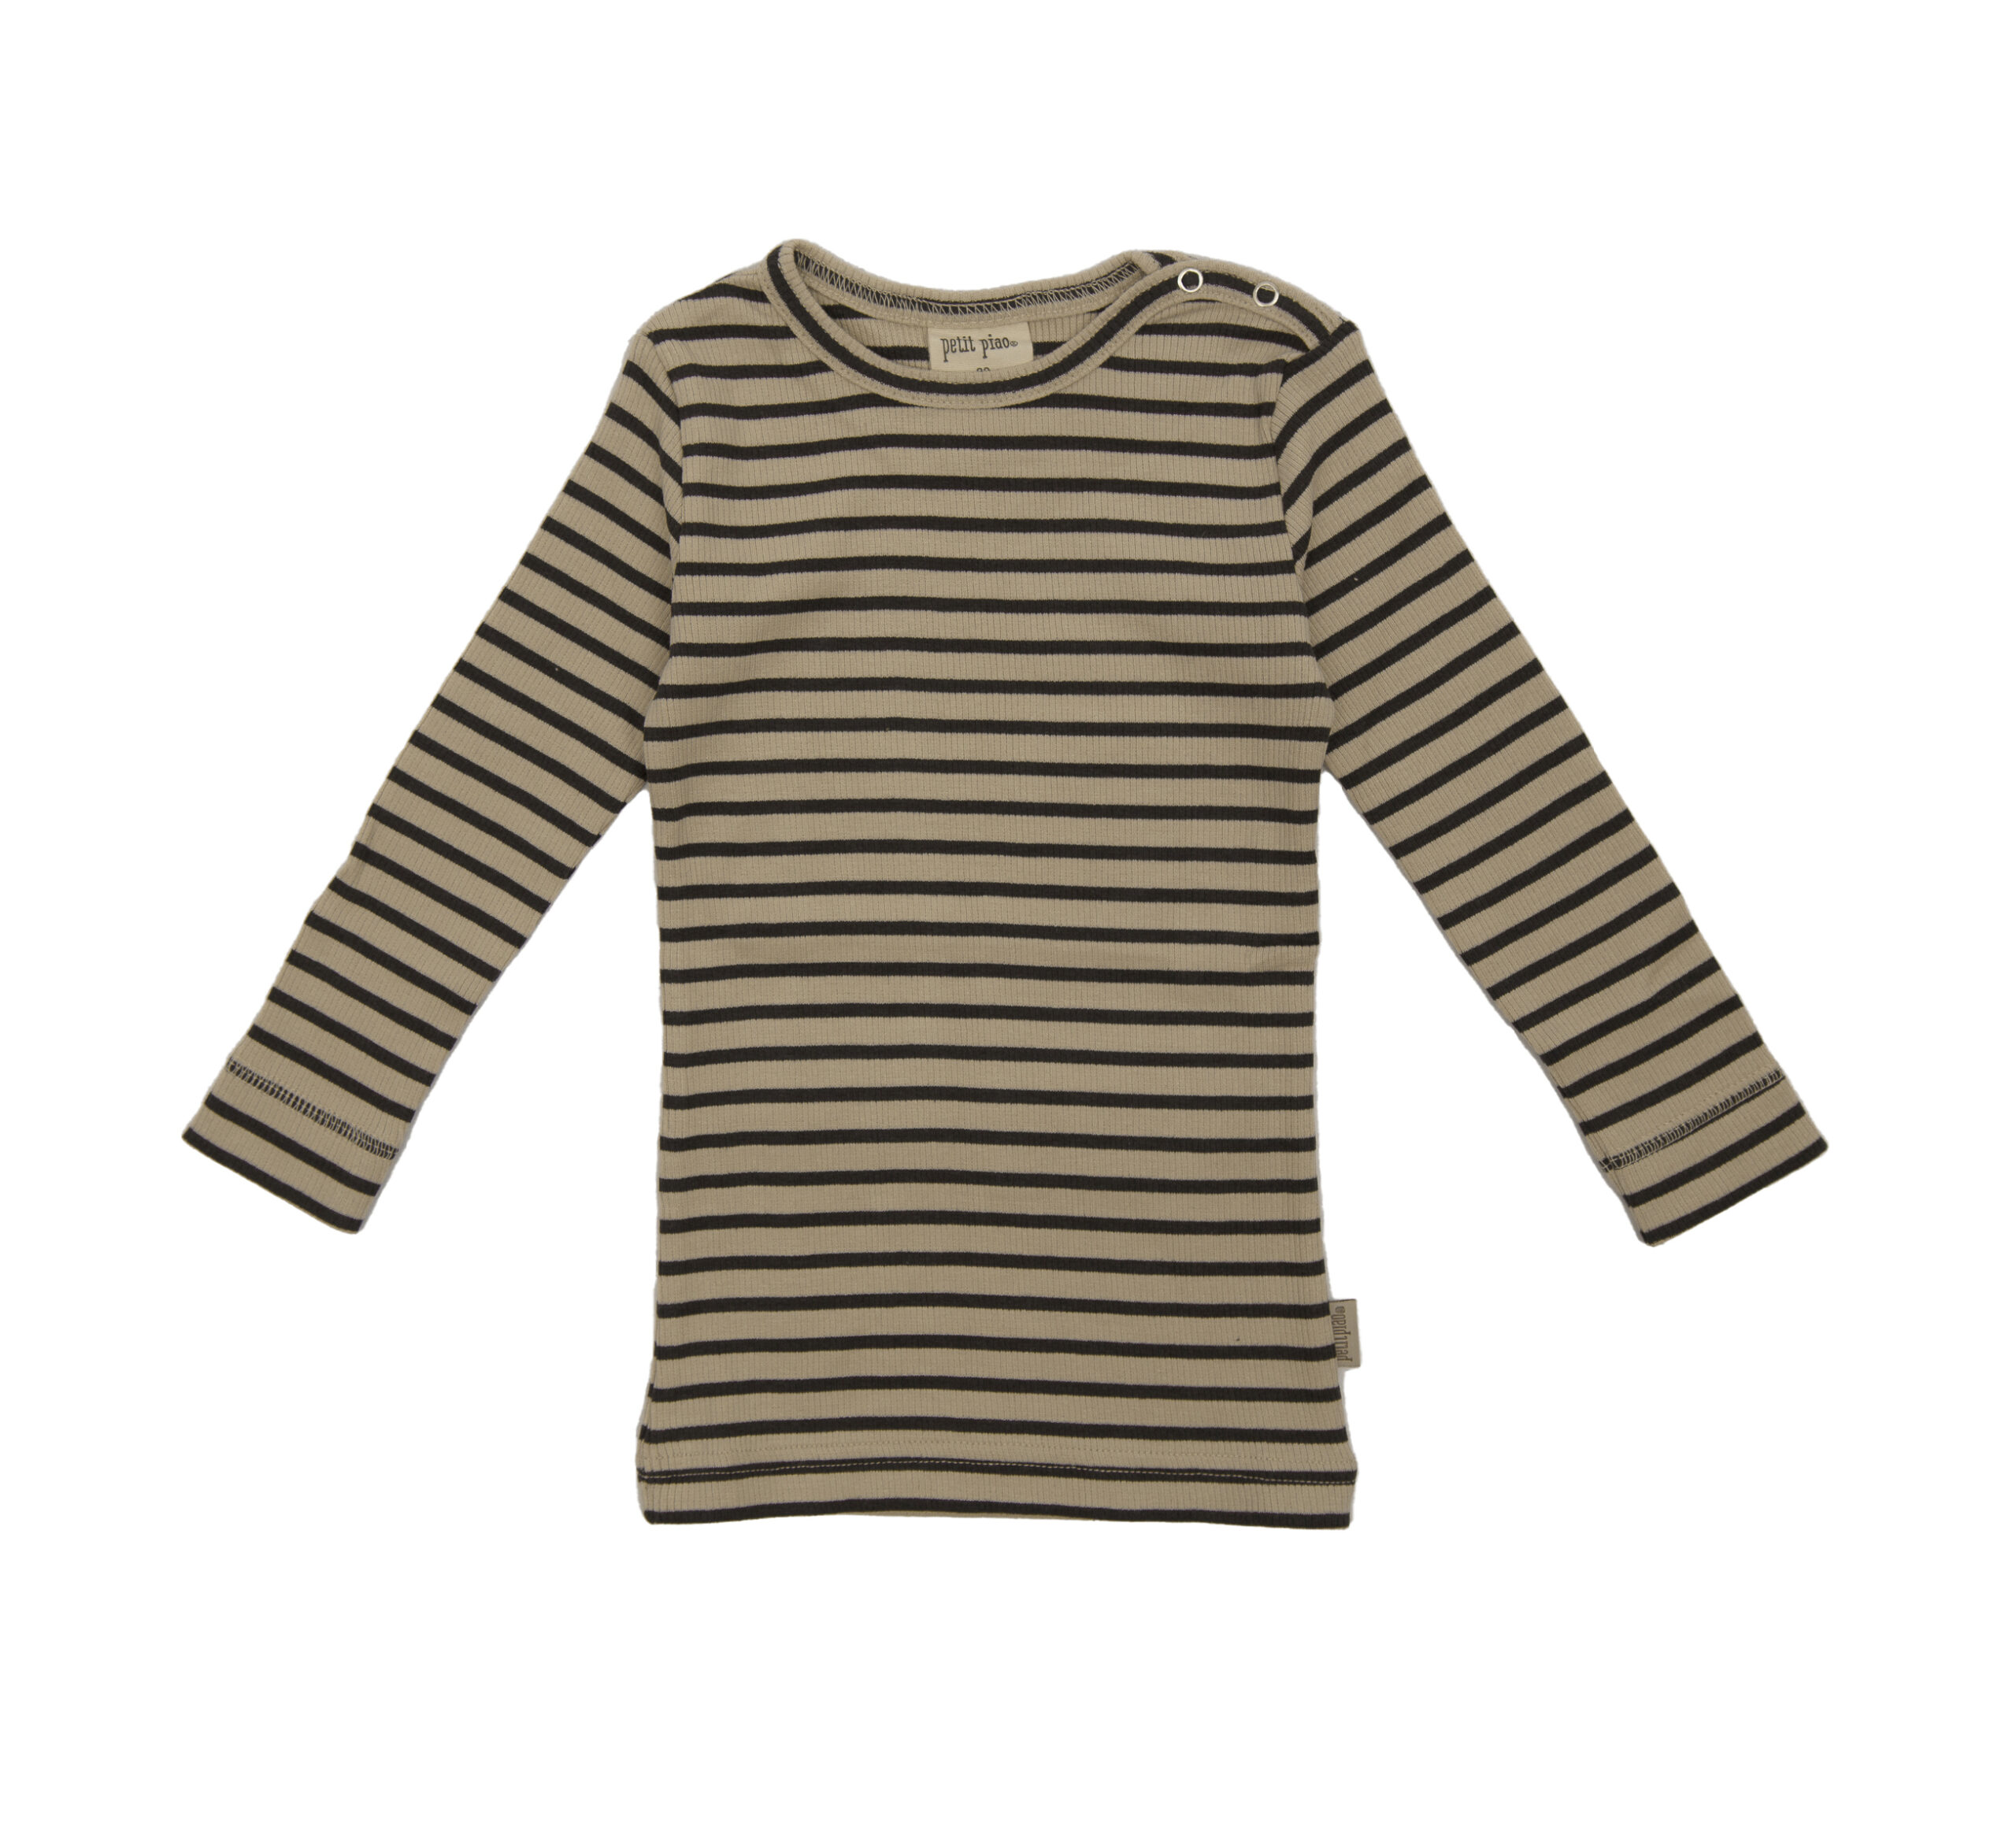 jeffogjoy-petitpiao-t-shirt-striped-raven/tapioka